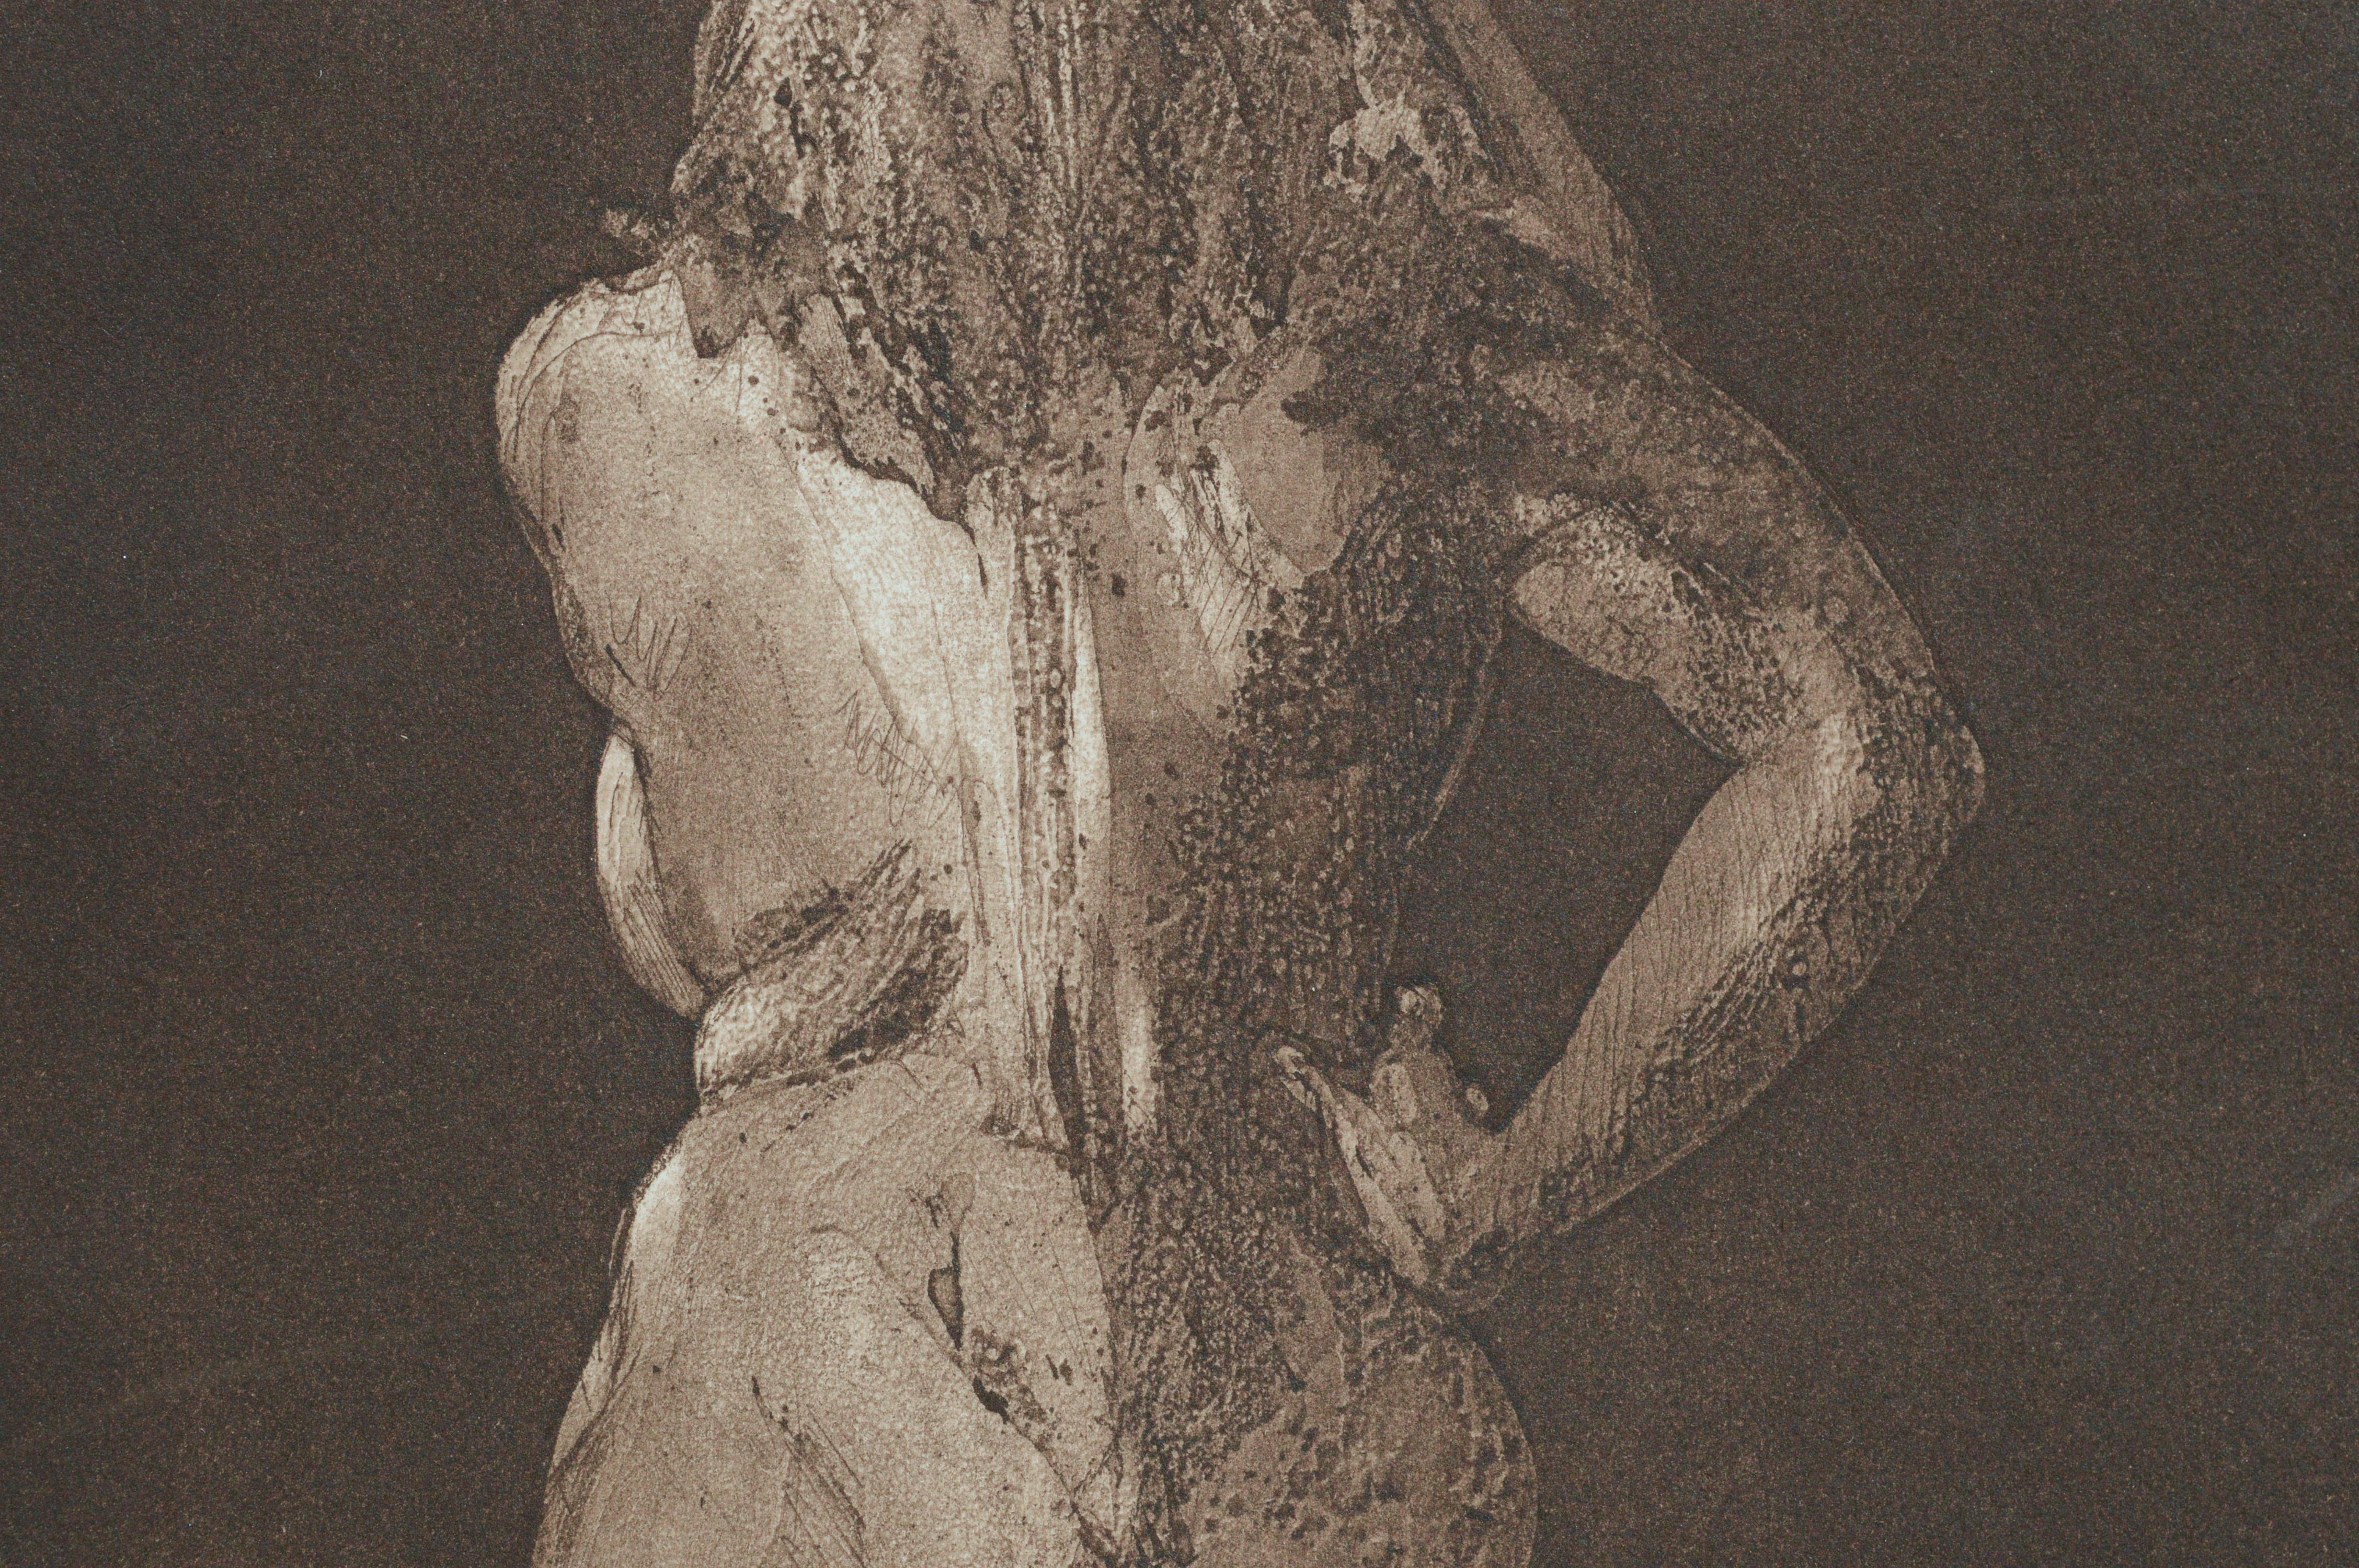 Akt Aktfigur aus der Gegenwart, figurative Kaltnadelradierung (Grau), Figurative Print, von Jim Smyth